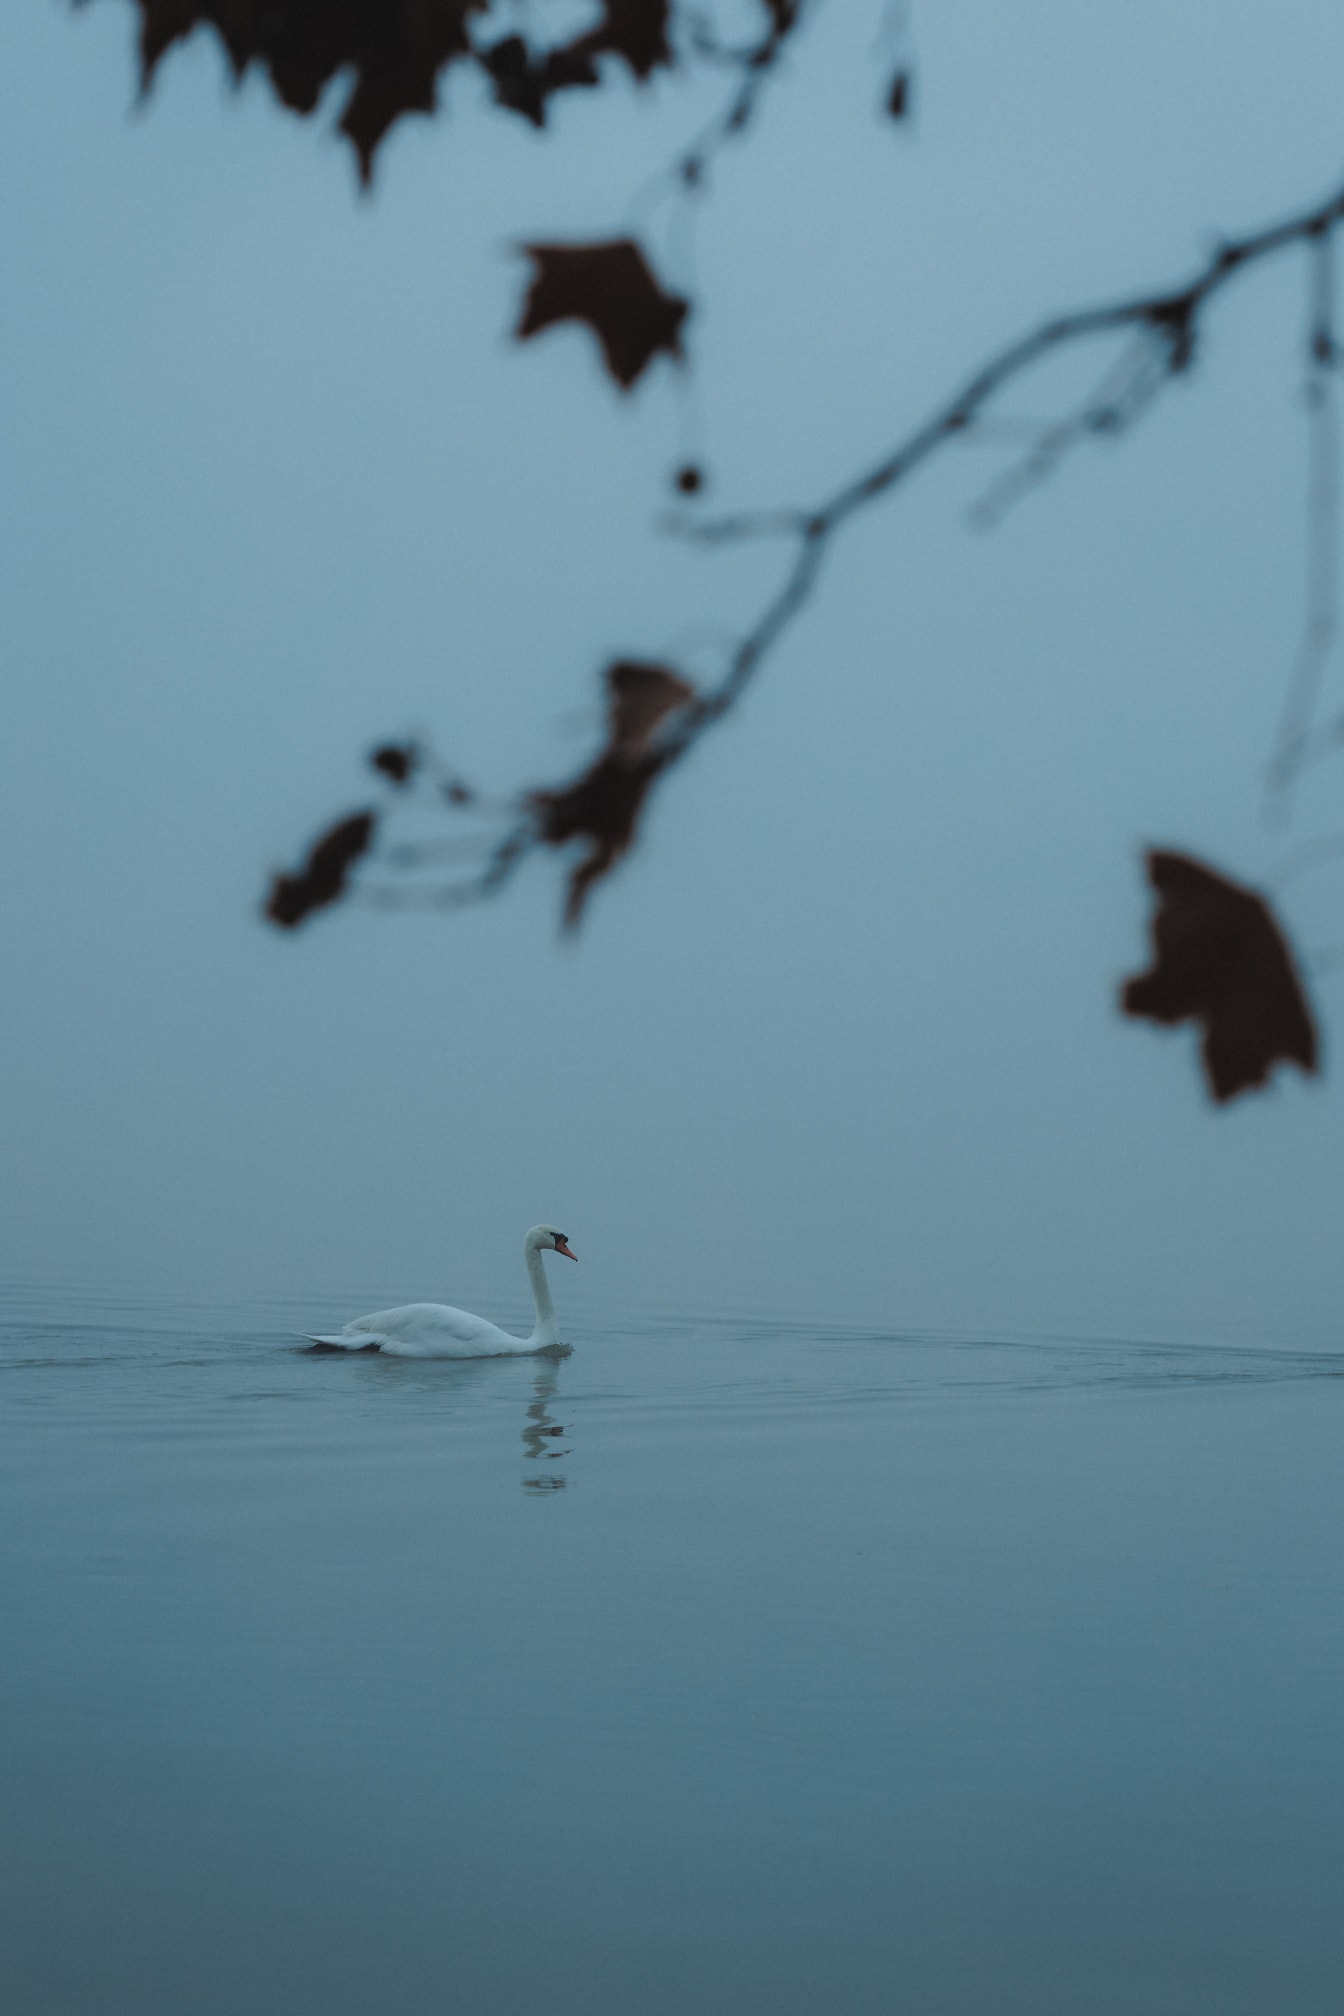 Лебедь-шипун (Cygnus olor) плавает по воде в туманный день